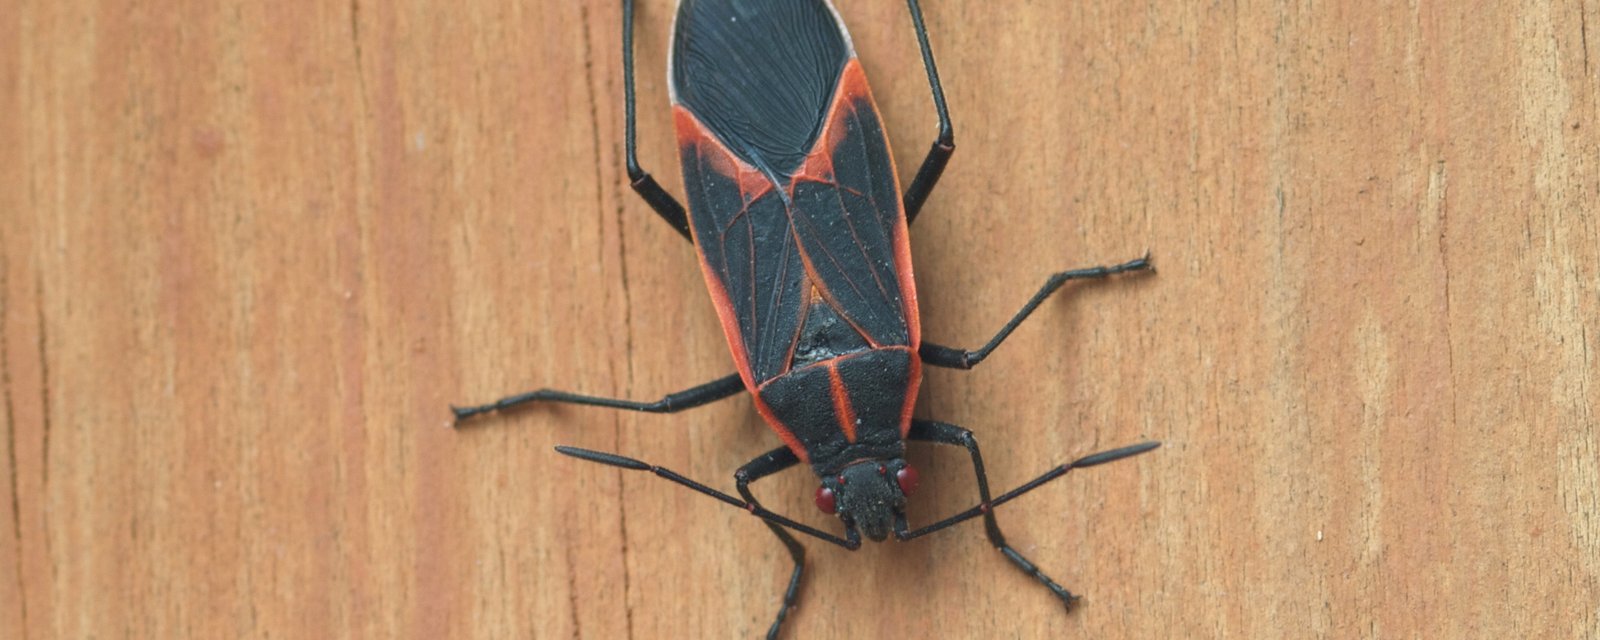 N'écrasez surtout pas cet insecte si vous en apercevez dans votre maison